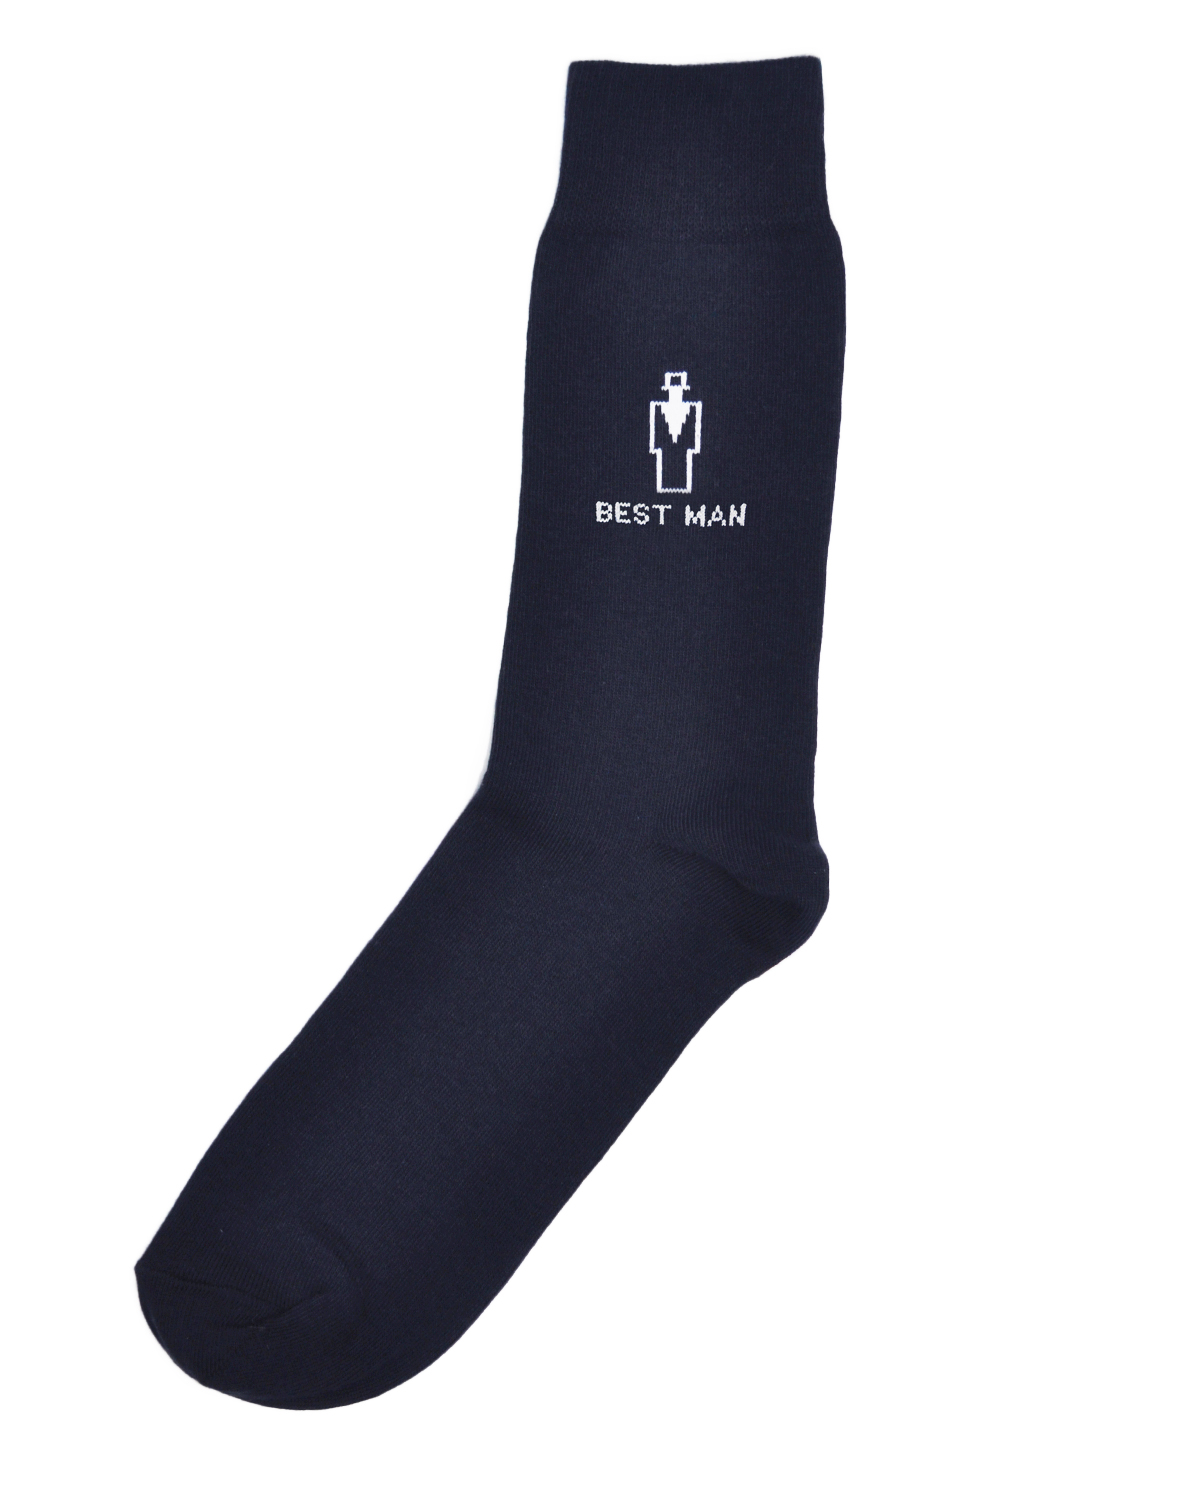 Navy Best Man Socks - Formal Tailor